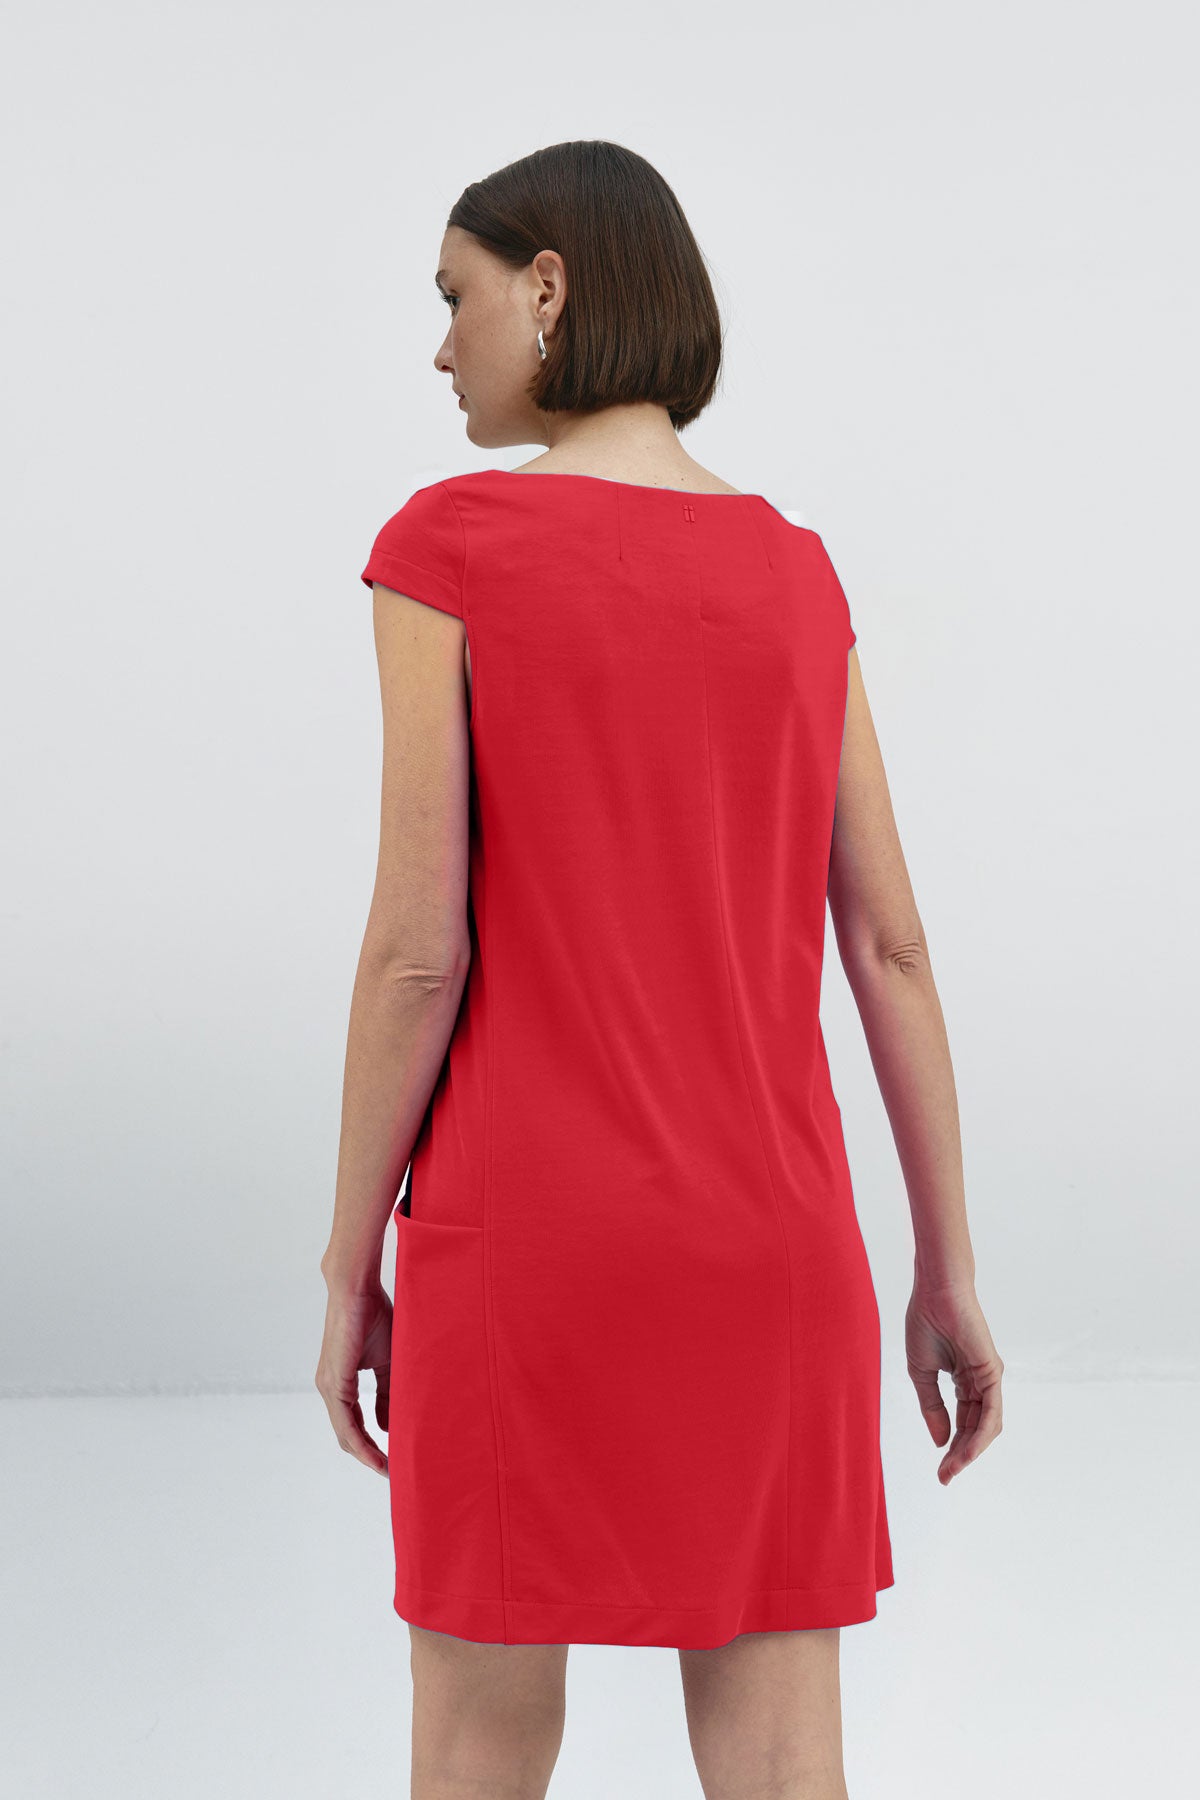 Vestido holgado de mujer con cuello redondo y bolsillos. Un vestido perfecto para mujer en verano, un básico de fondo de armario en color rojo